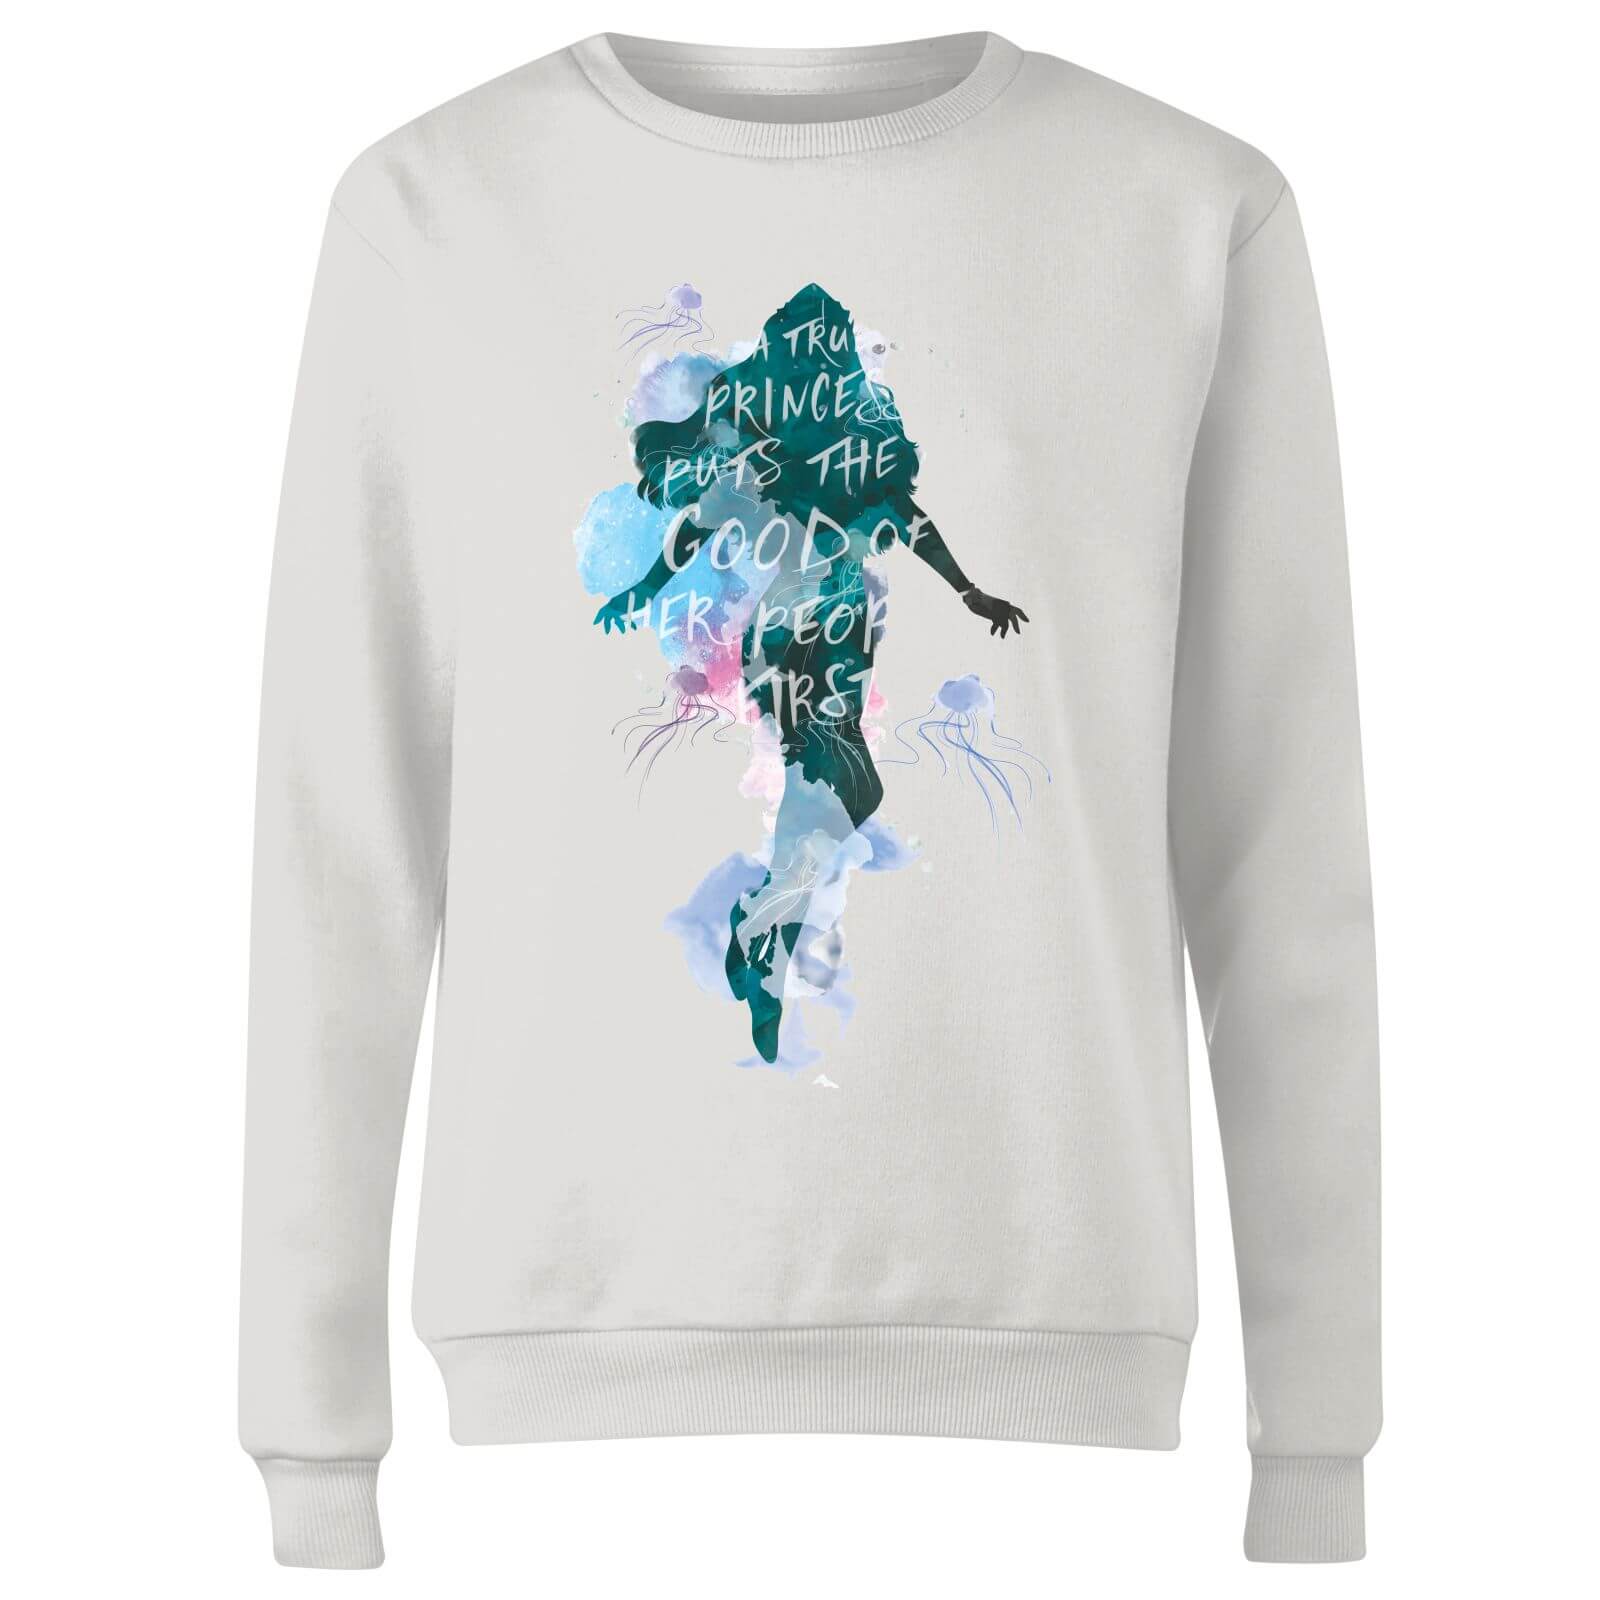 Aquaman Mera True Princess Damen Sweatshirt - Weiß - L 4